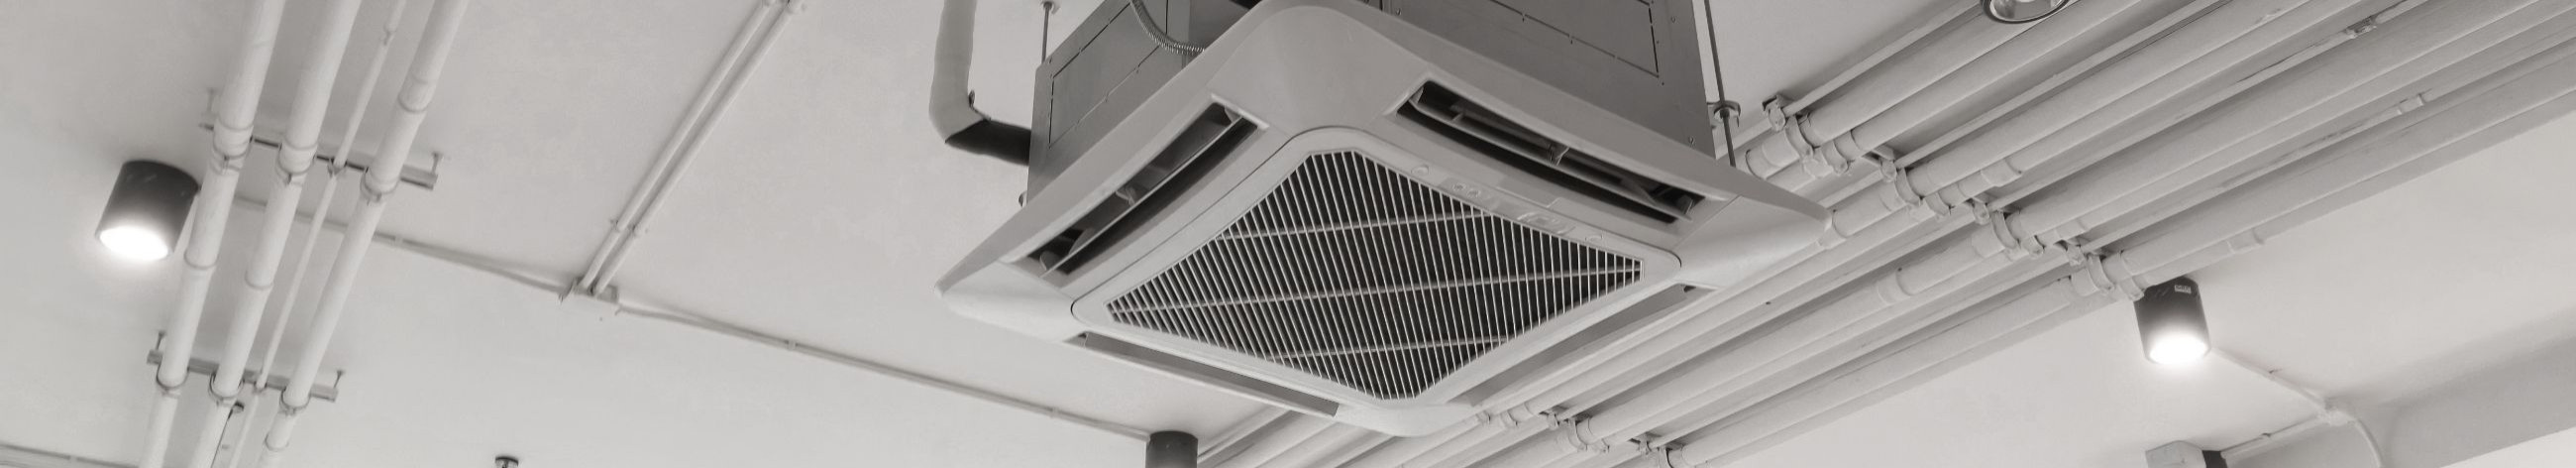 Pakume täielikke ventilatsioonilahendusi alates süsteemide paigaldamisest kuni hoolduseni, tagades optimaalse siseõhu kvaliteedi ja mugavuse igas ruumis.